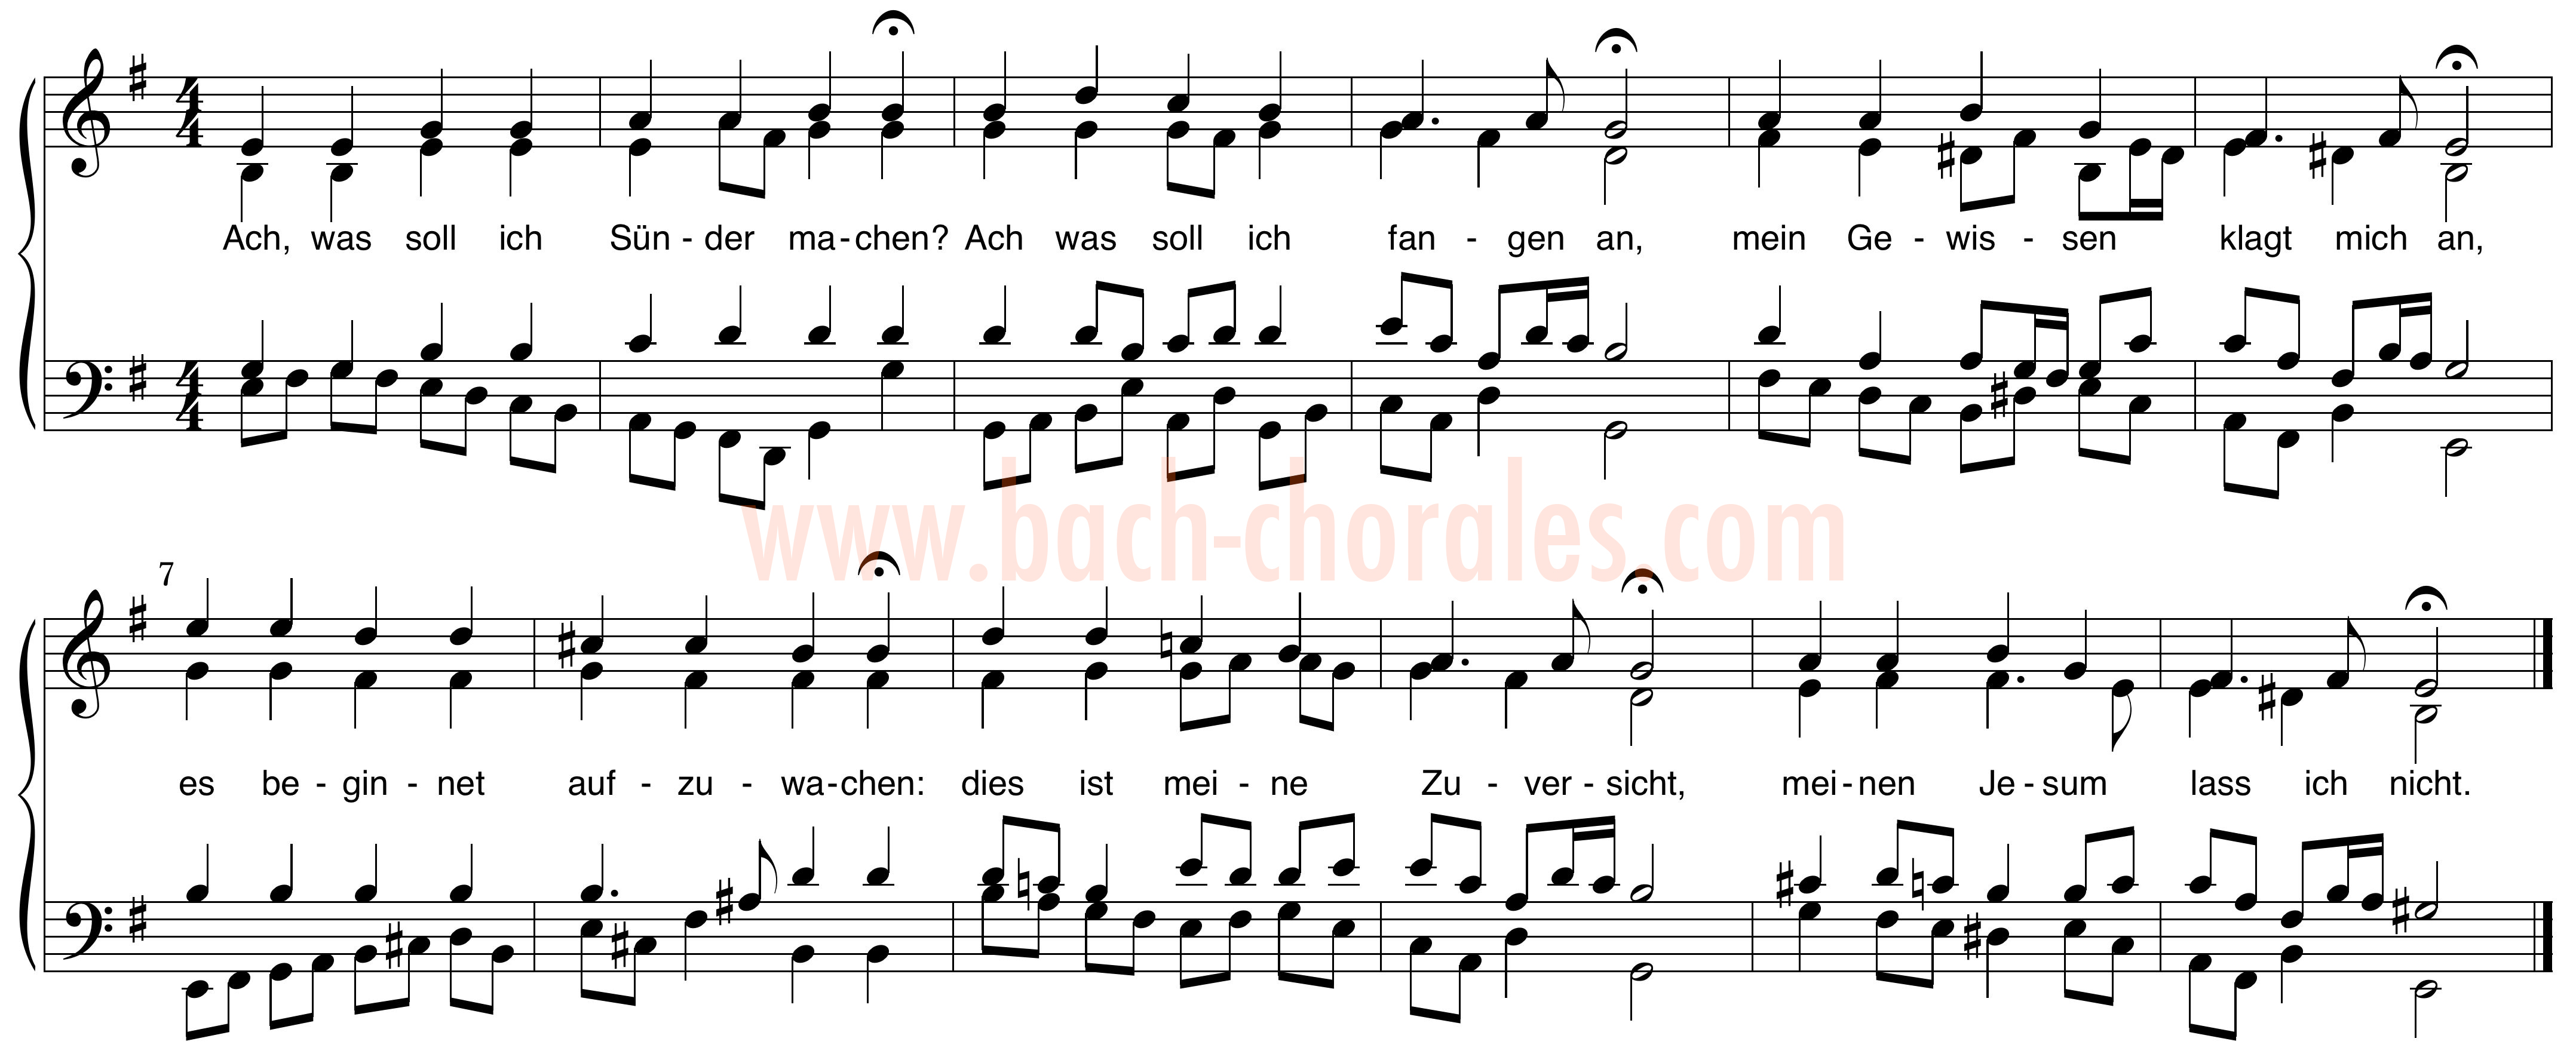 notenbeeld BWV 259 op https://www.bach-chorales.com/